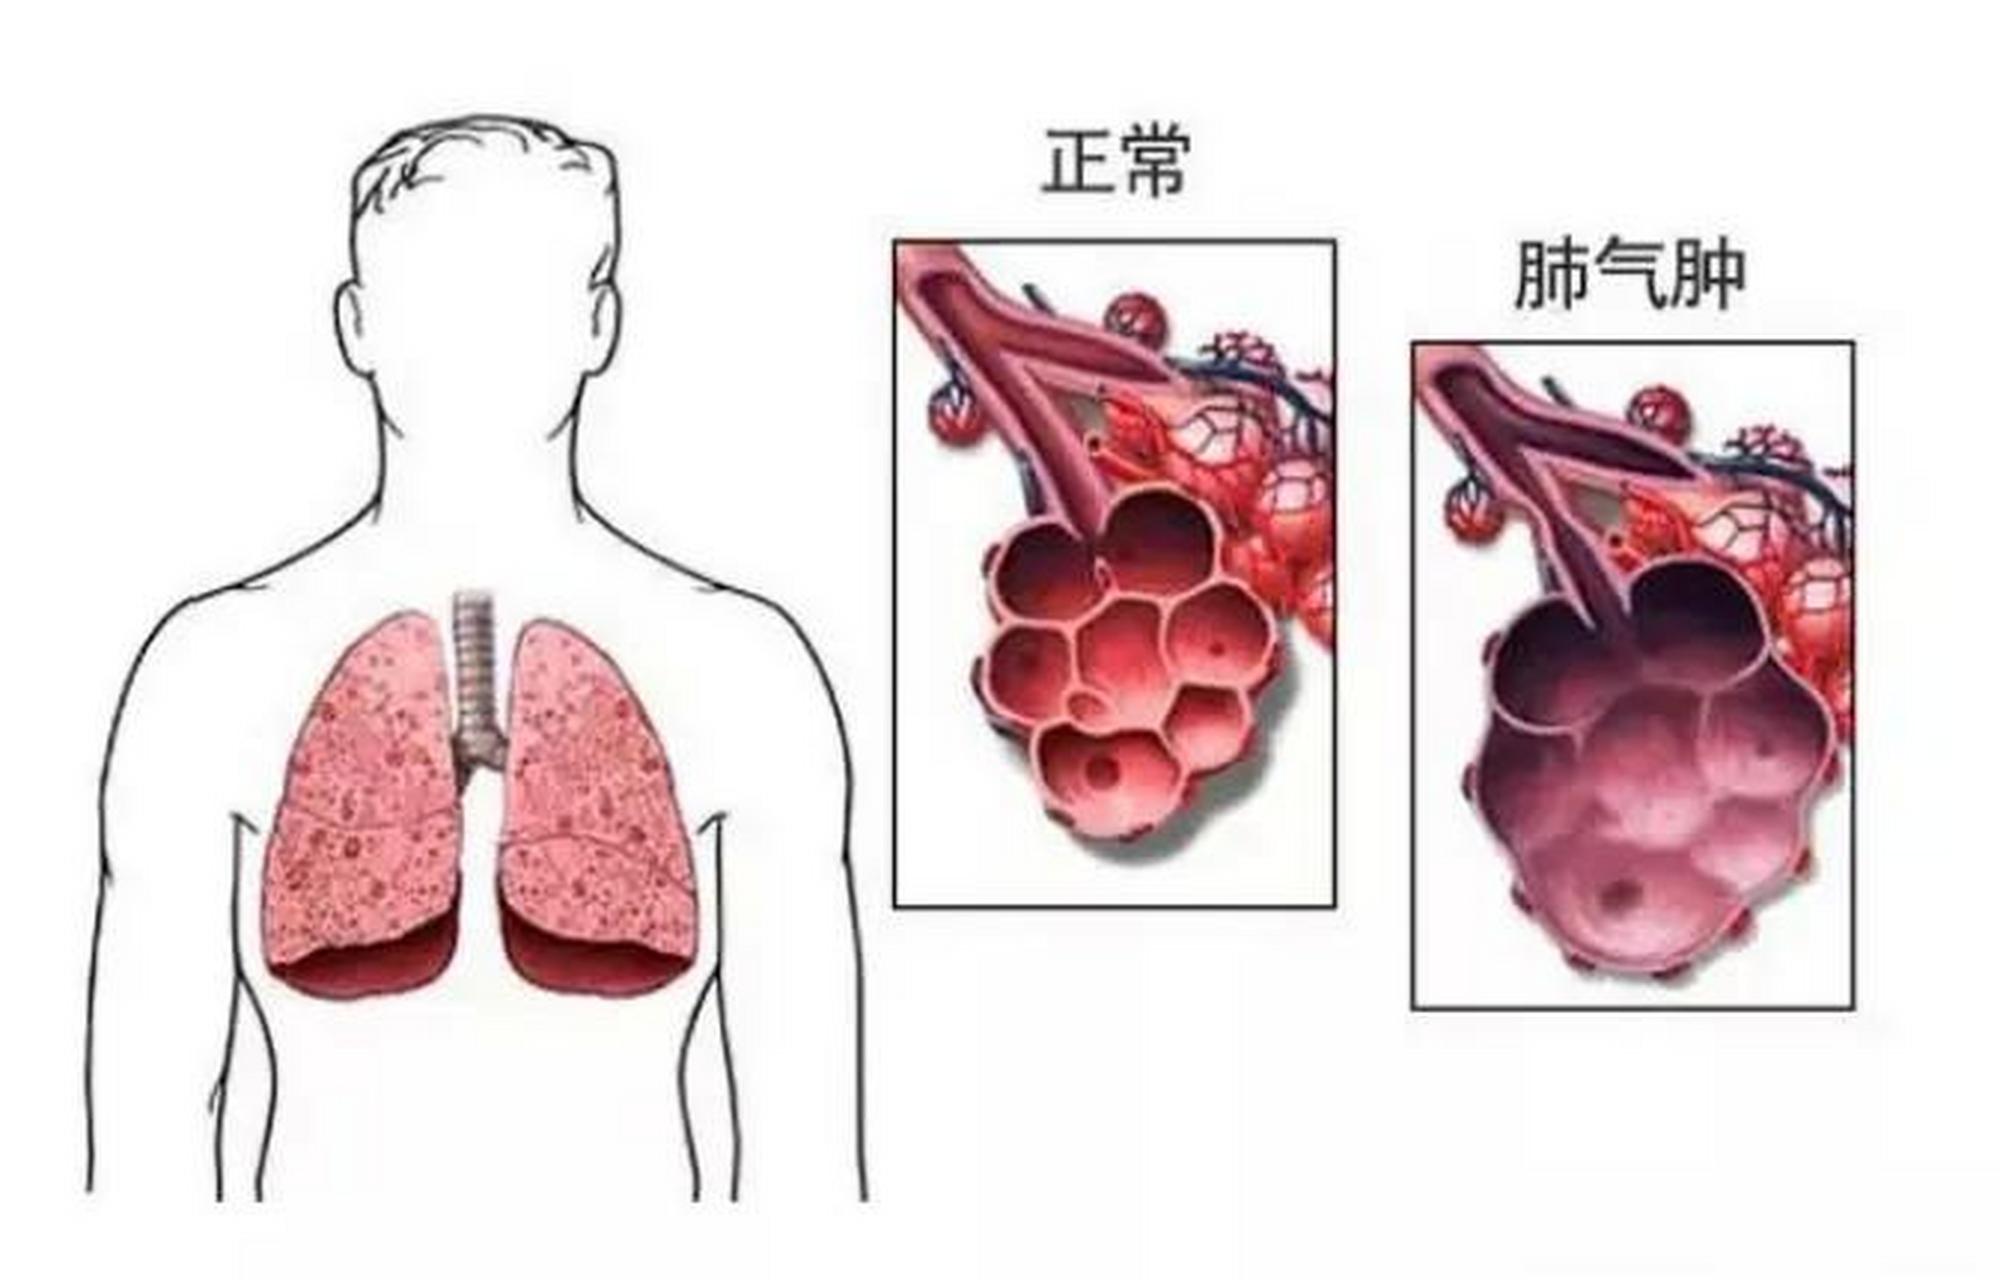 肺气肿常见并发症(一),自发性气胸:自发性气胸并发于阻塞性肺气肿者并